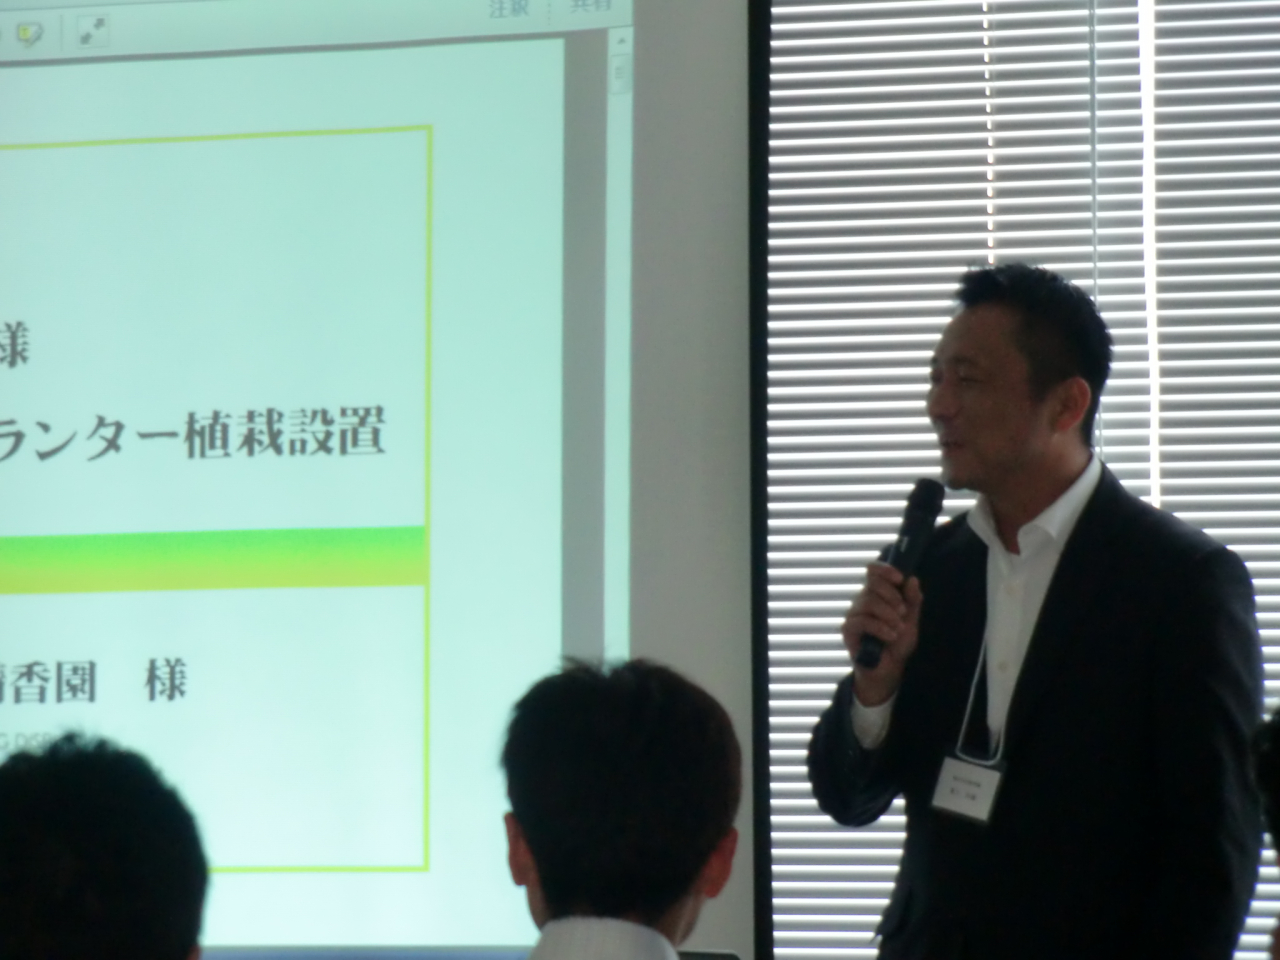 東京で開催されたプランツネットワークグループの講習会にて 緑化の事例を野上専務が発表させて頂きました。